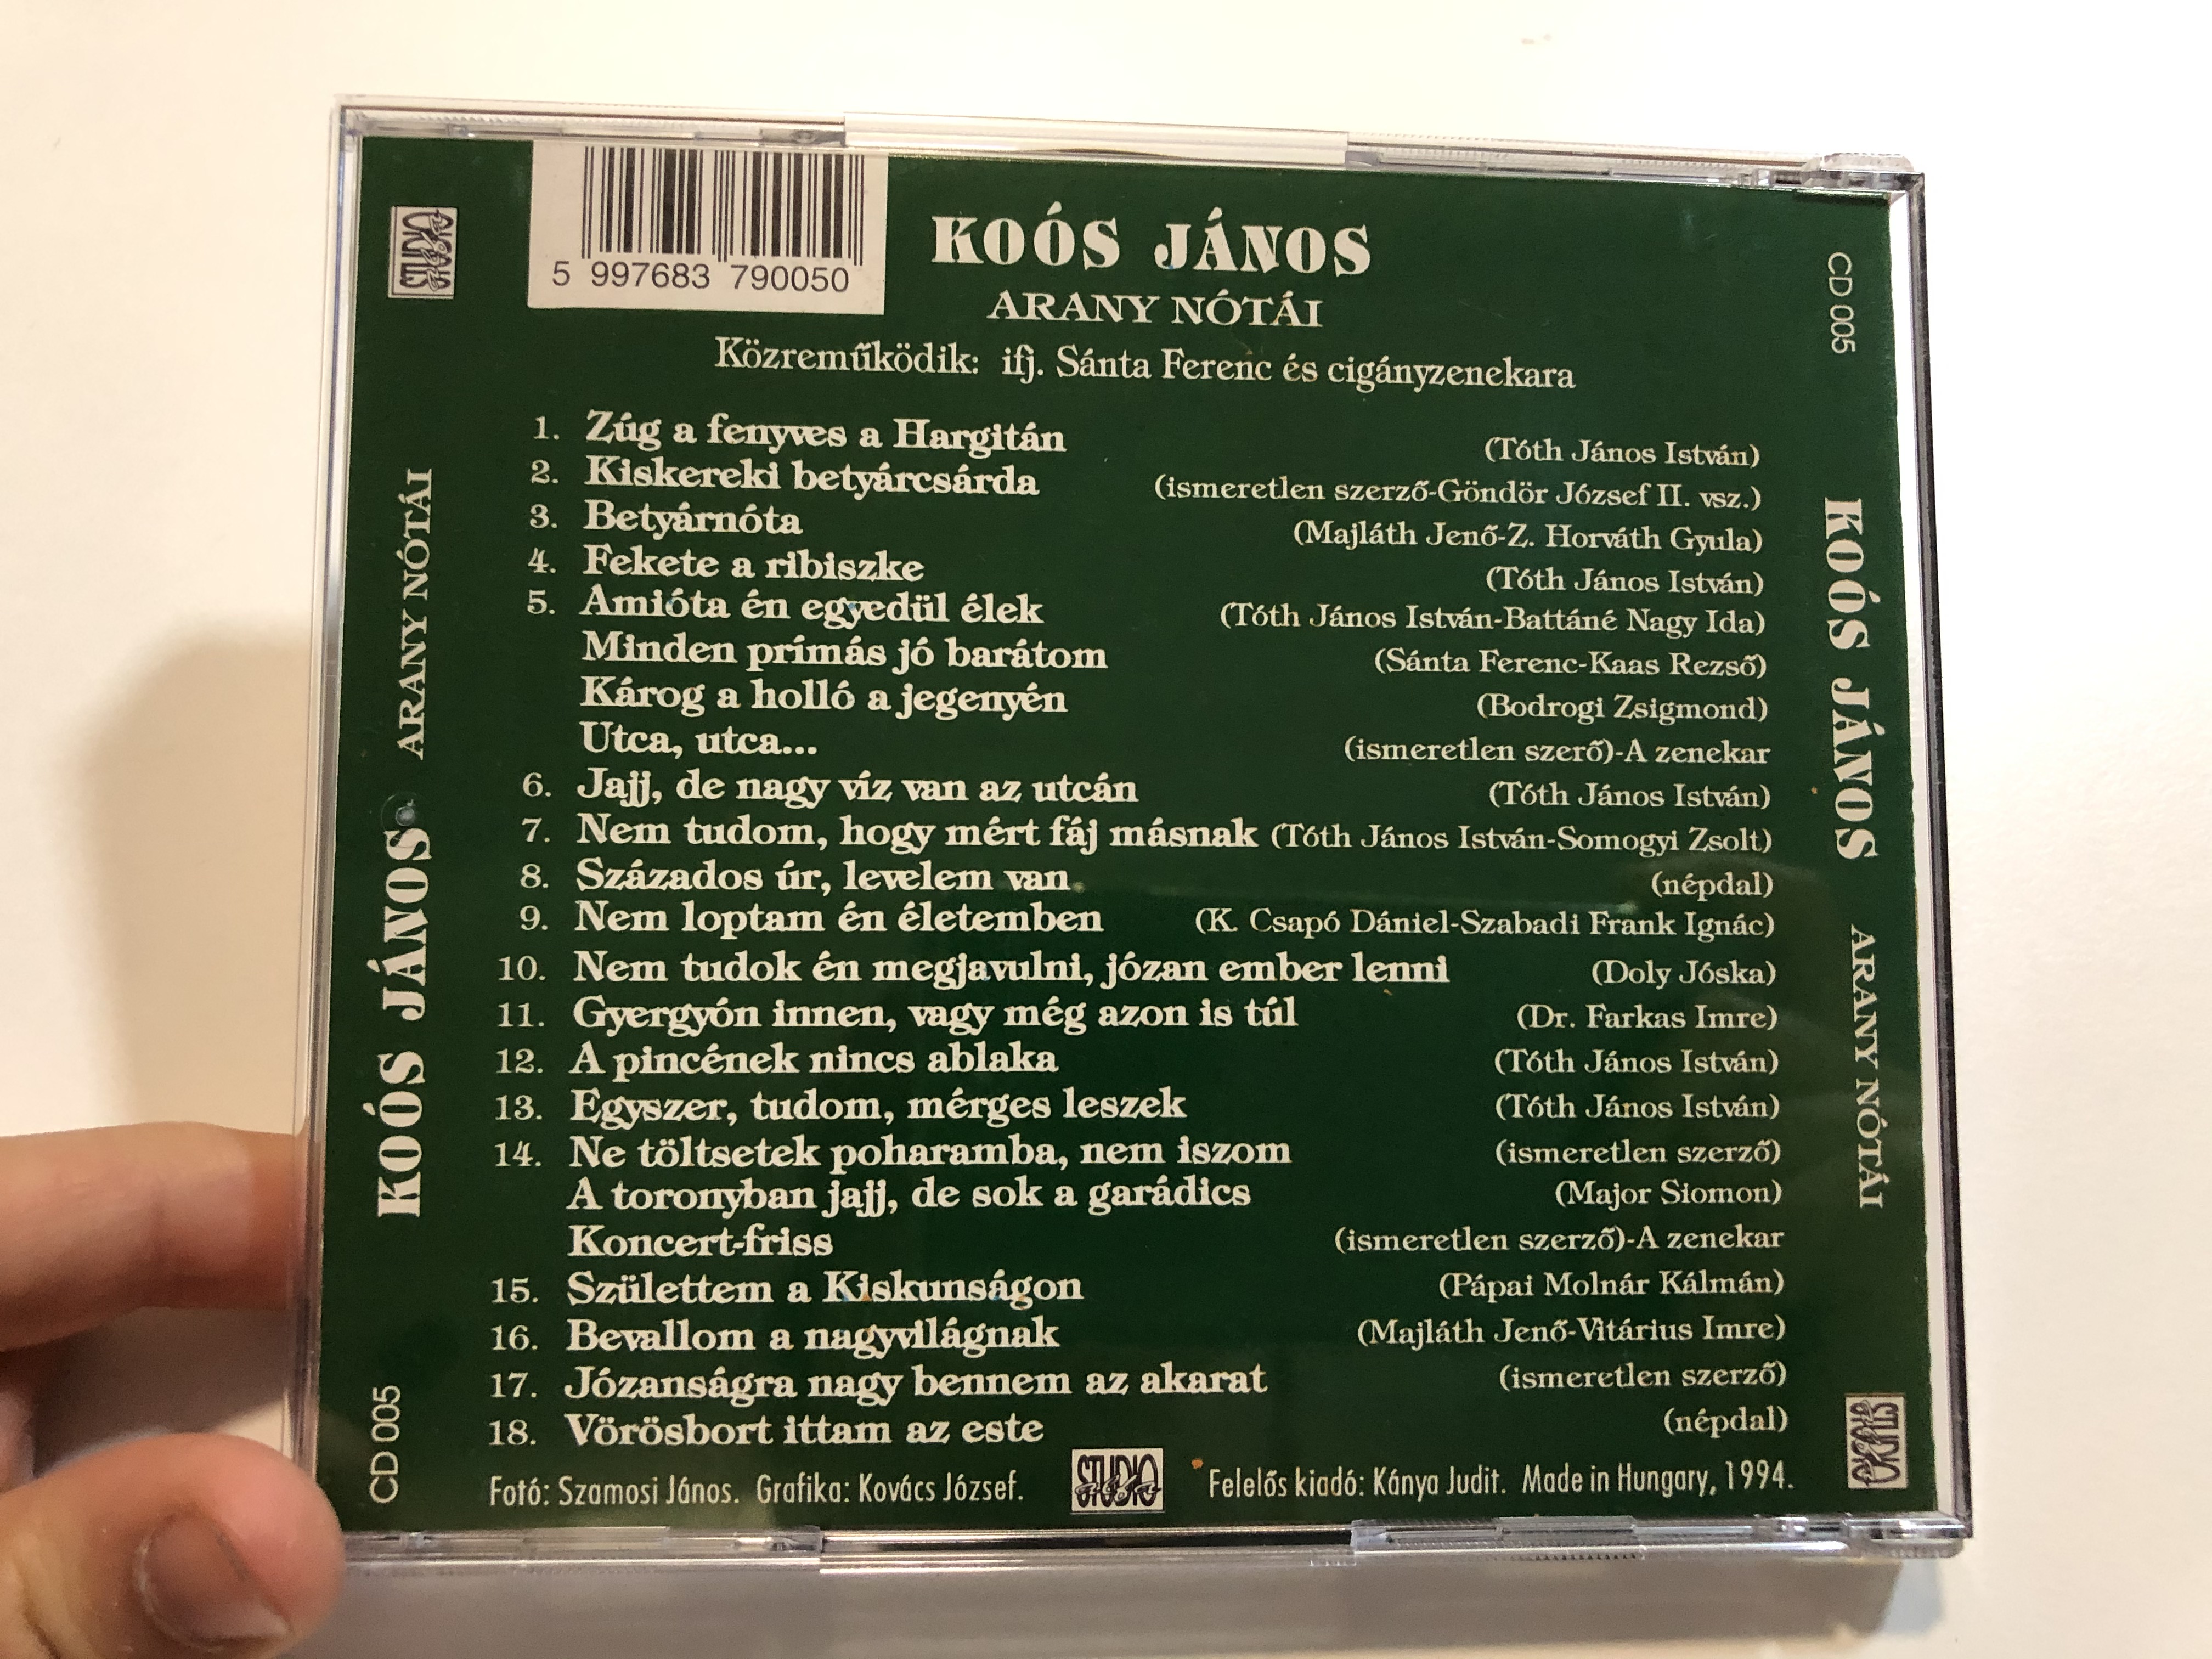 ko-s-j-nos-arany-n-t-i-alfa-studio-audio-cd-cd-005-5-.jpg